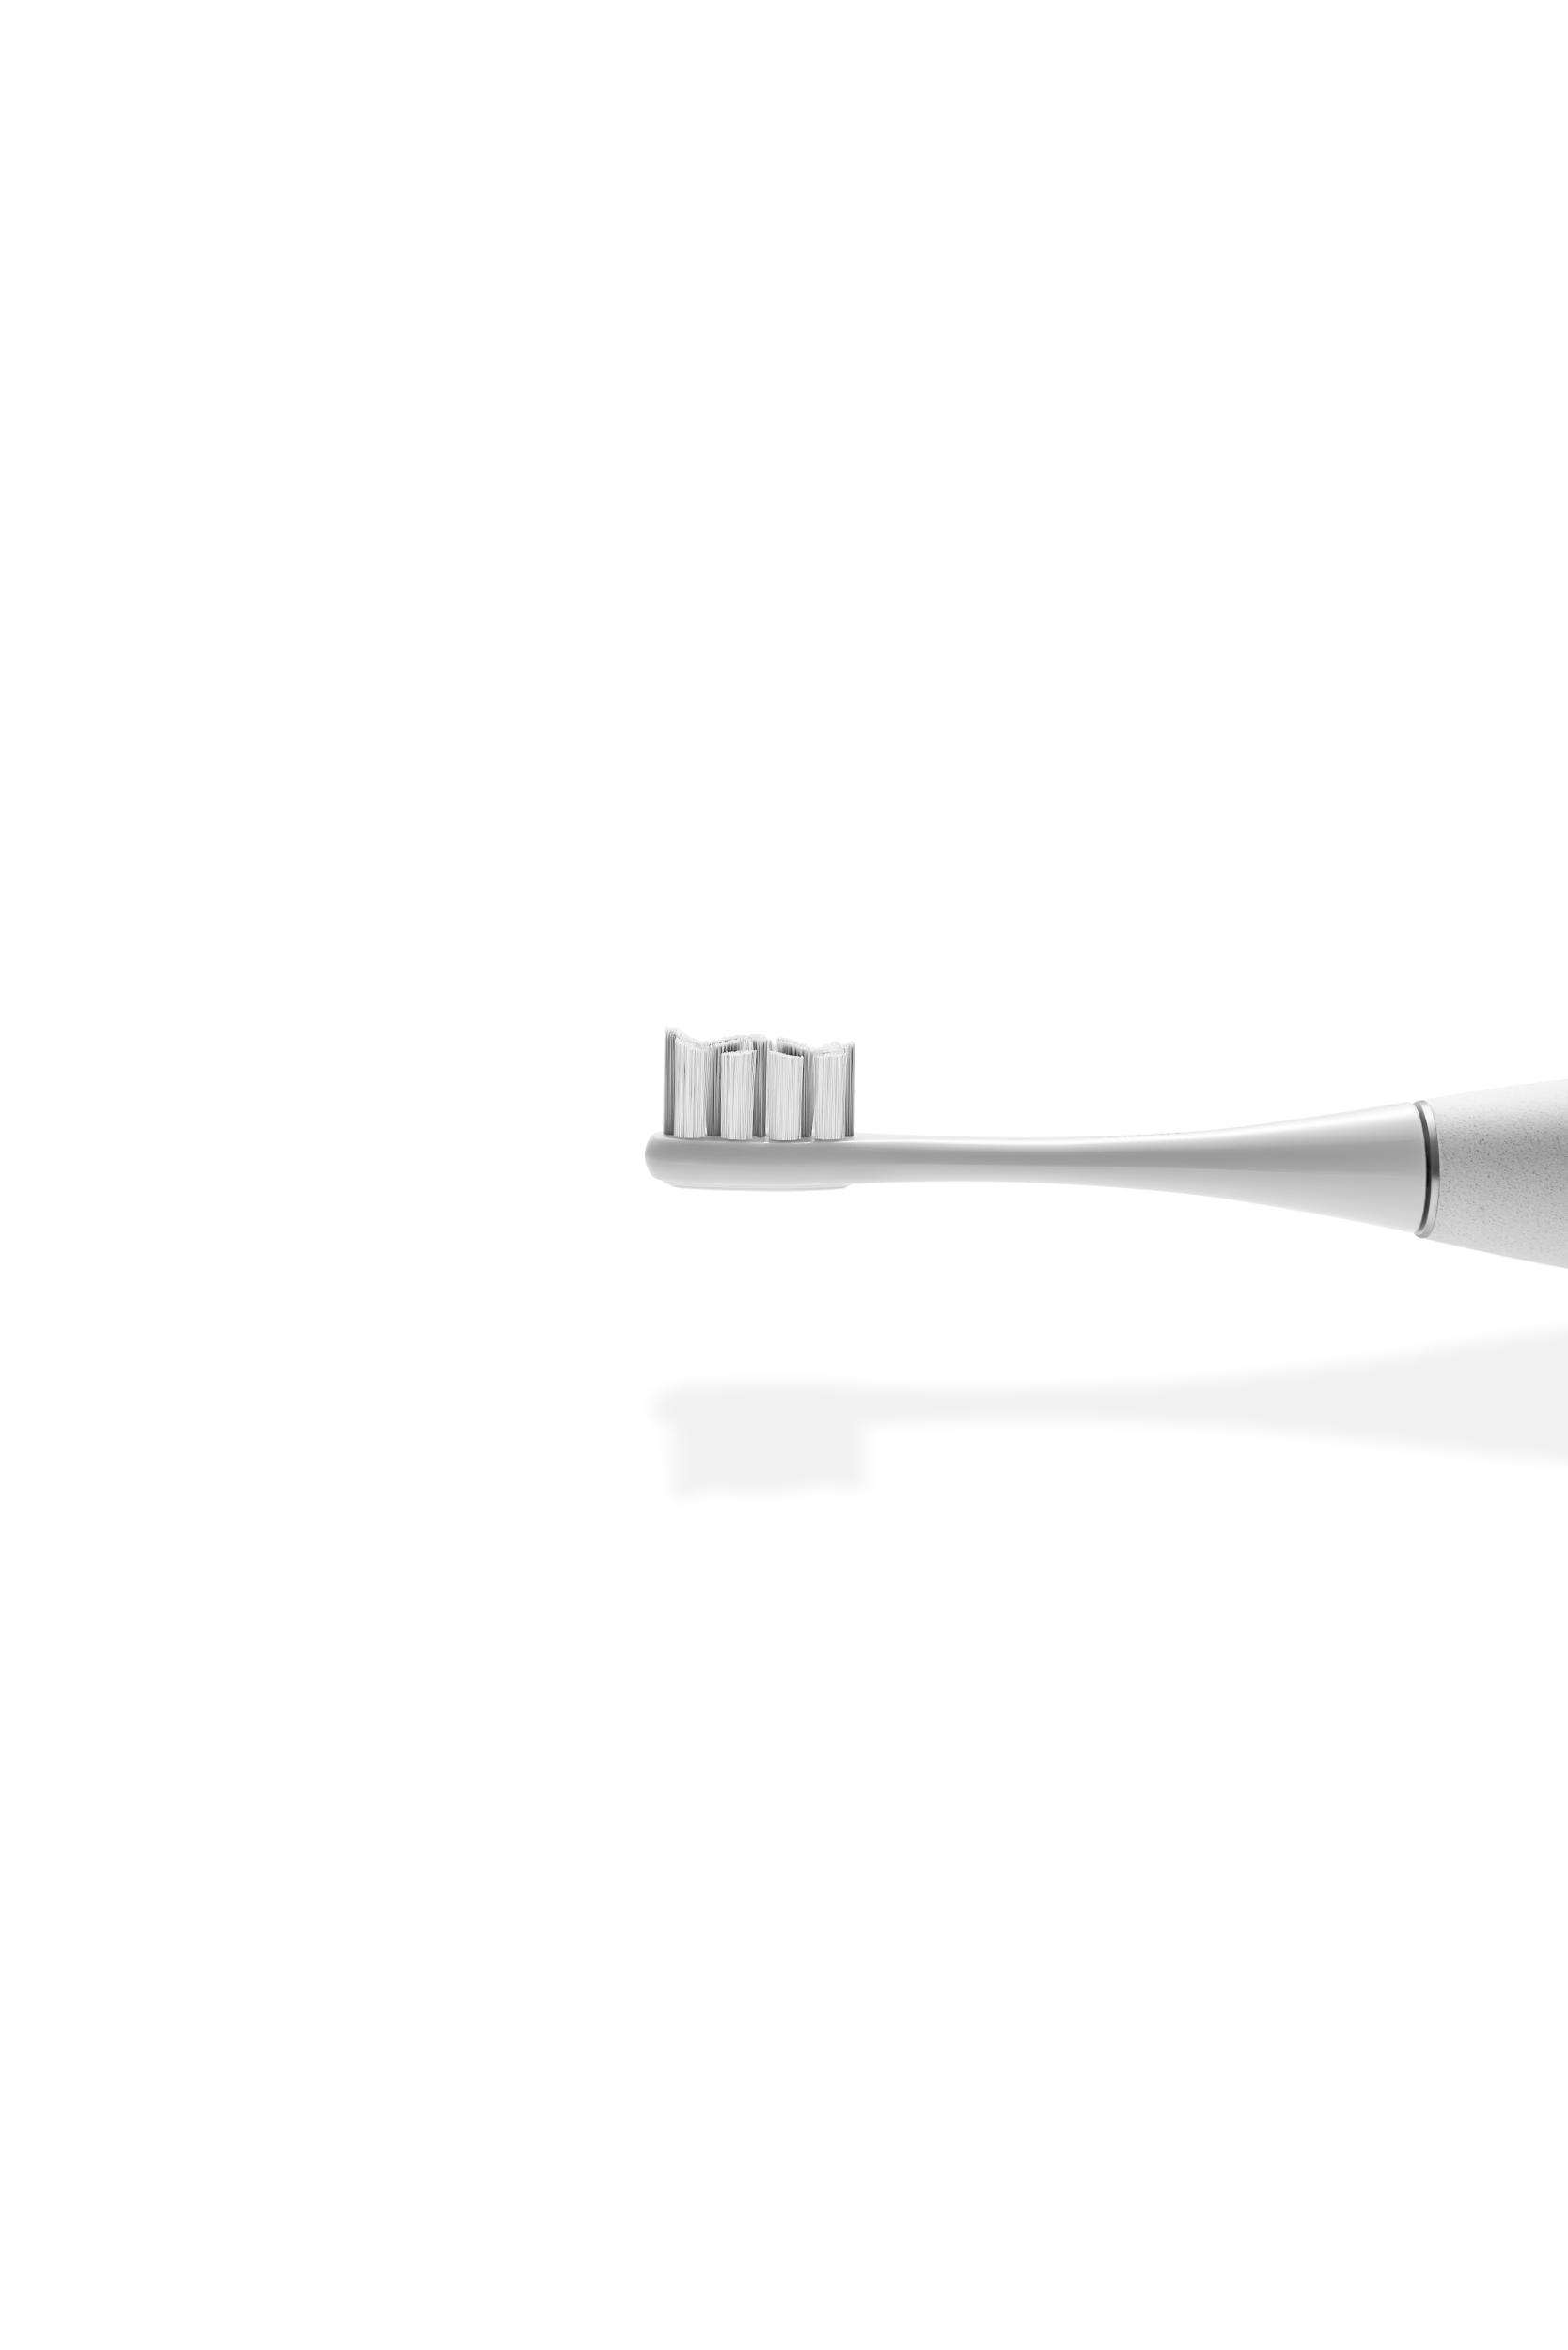 Pro Elite X C01000281 Zahnbürste Elektrische Grey OCLEAN